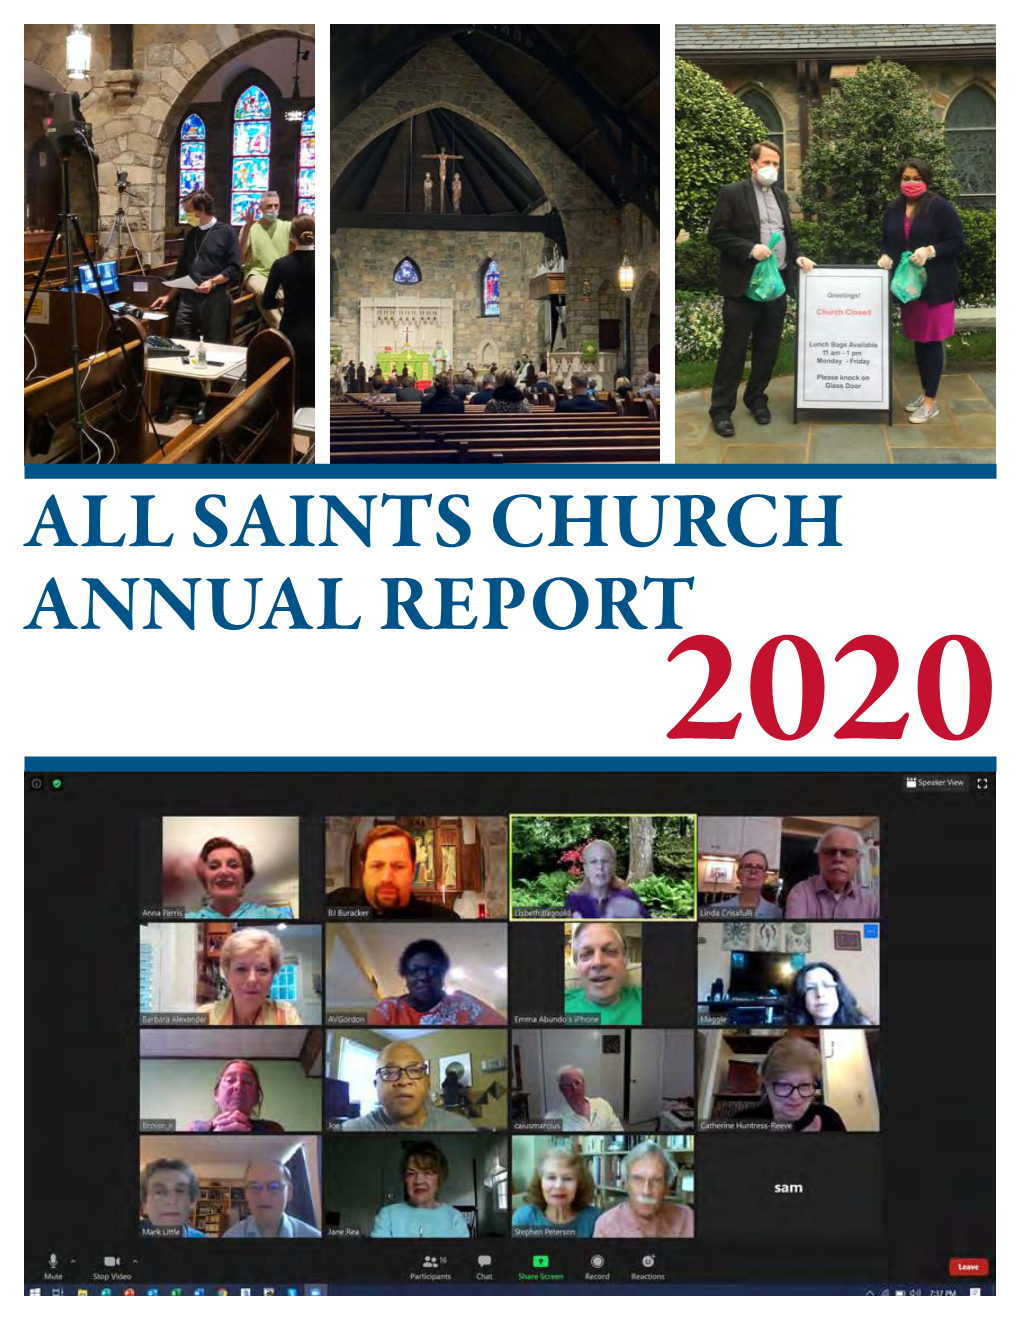 Annual Report All Saints Church